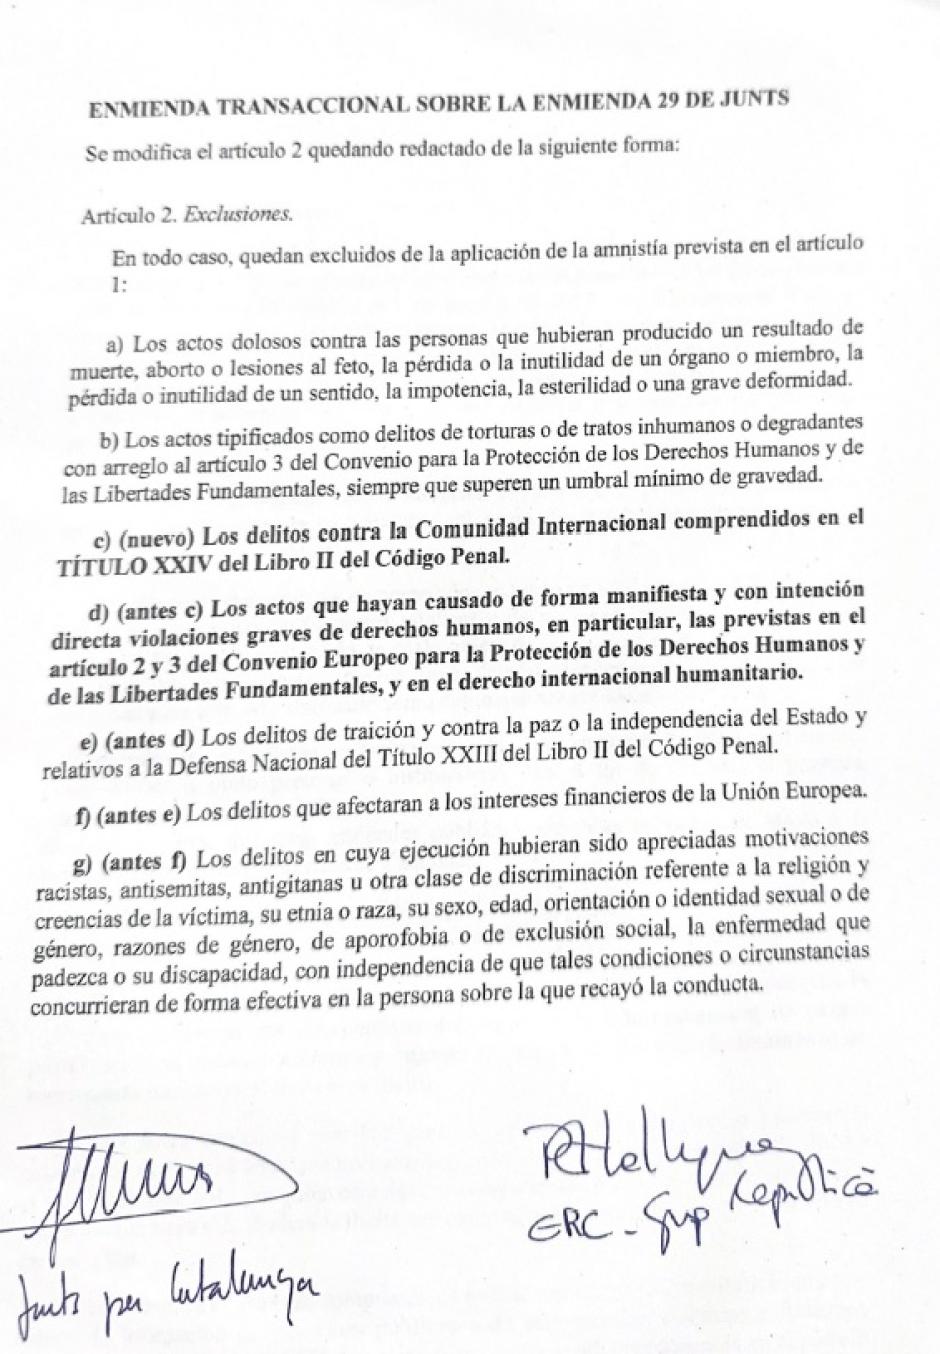 La enmienda de Junts y ERC sobre las exclusiones a la amnistía